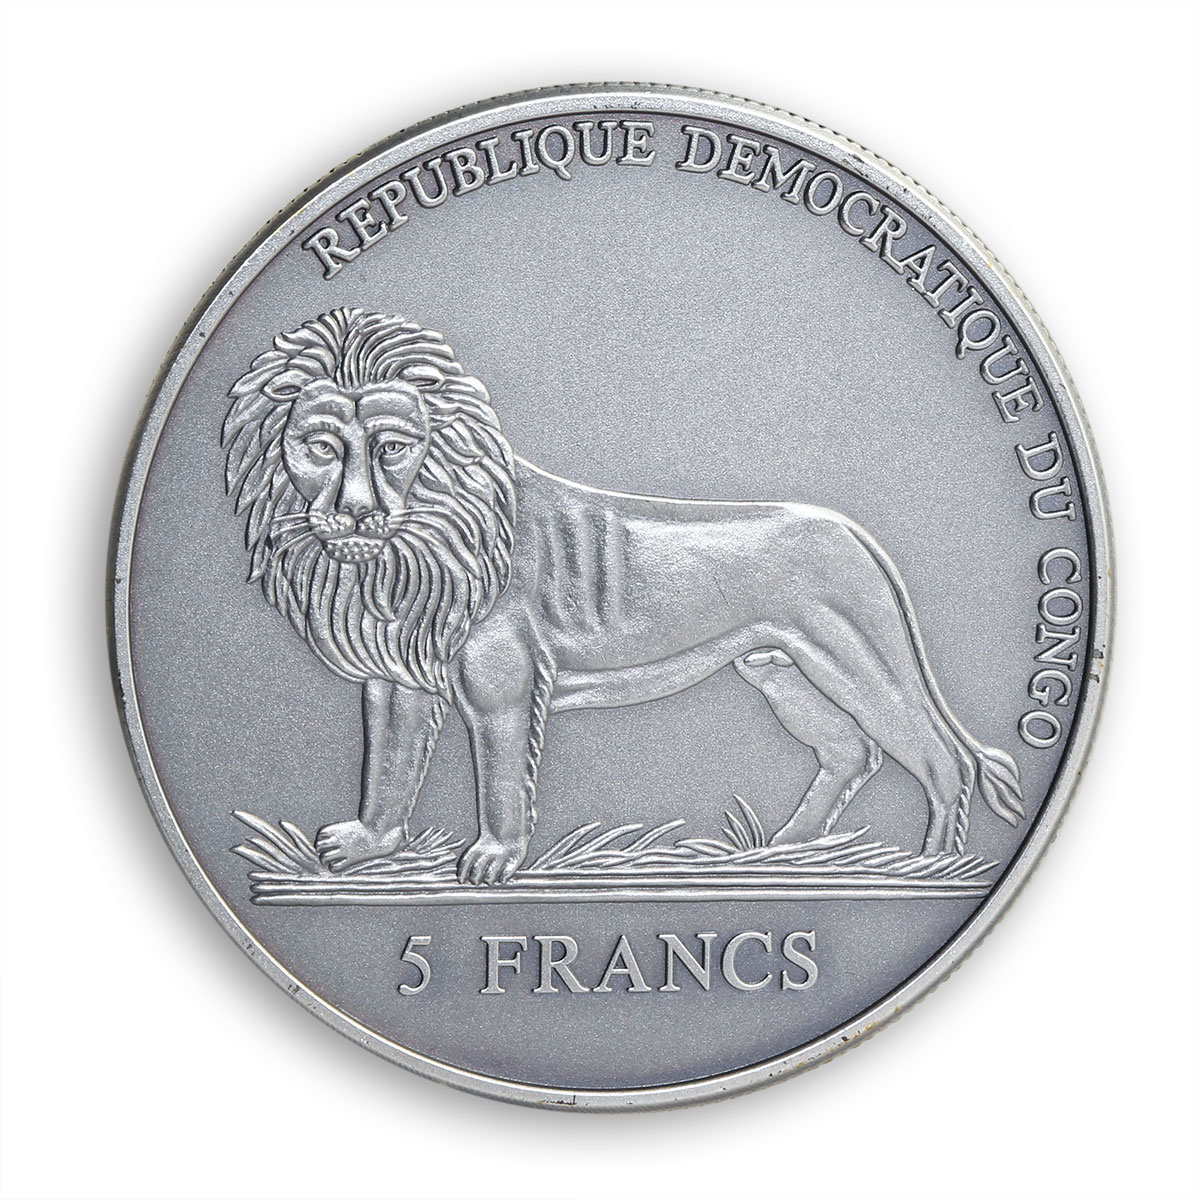 Congo 5 francs Sailor calendar for 50 years time anchor marine copper coin 2004